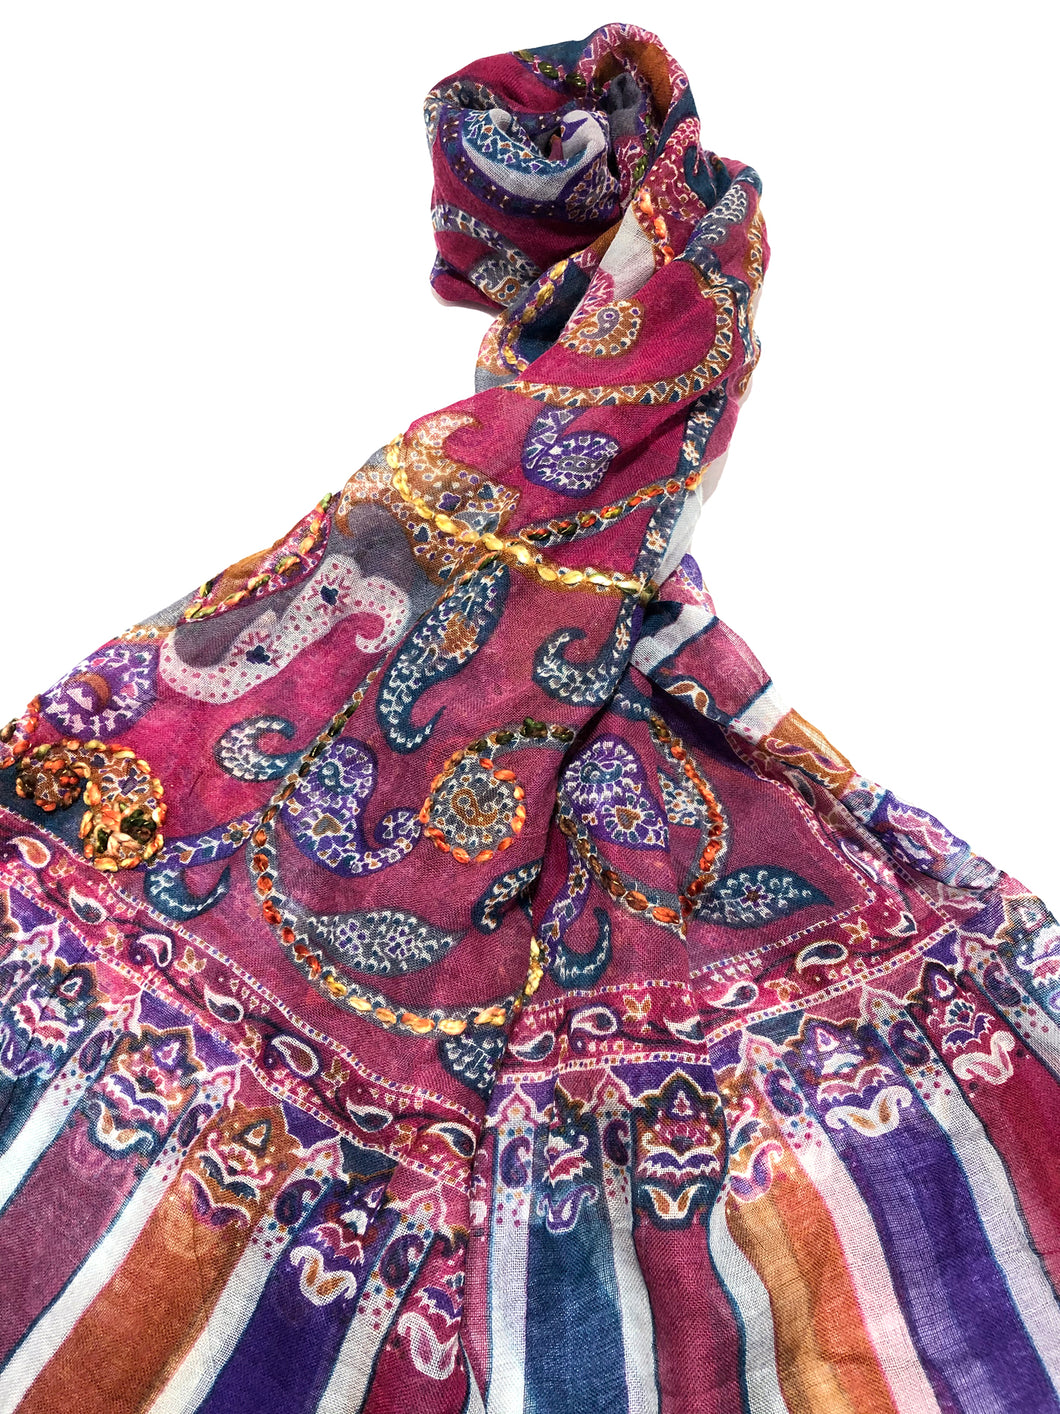 100% Light Wool Printed Embellished Pashmina Shawl ref-rflghwt0001